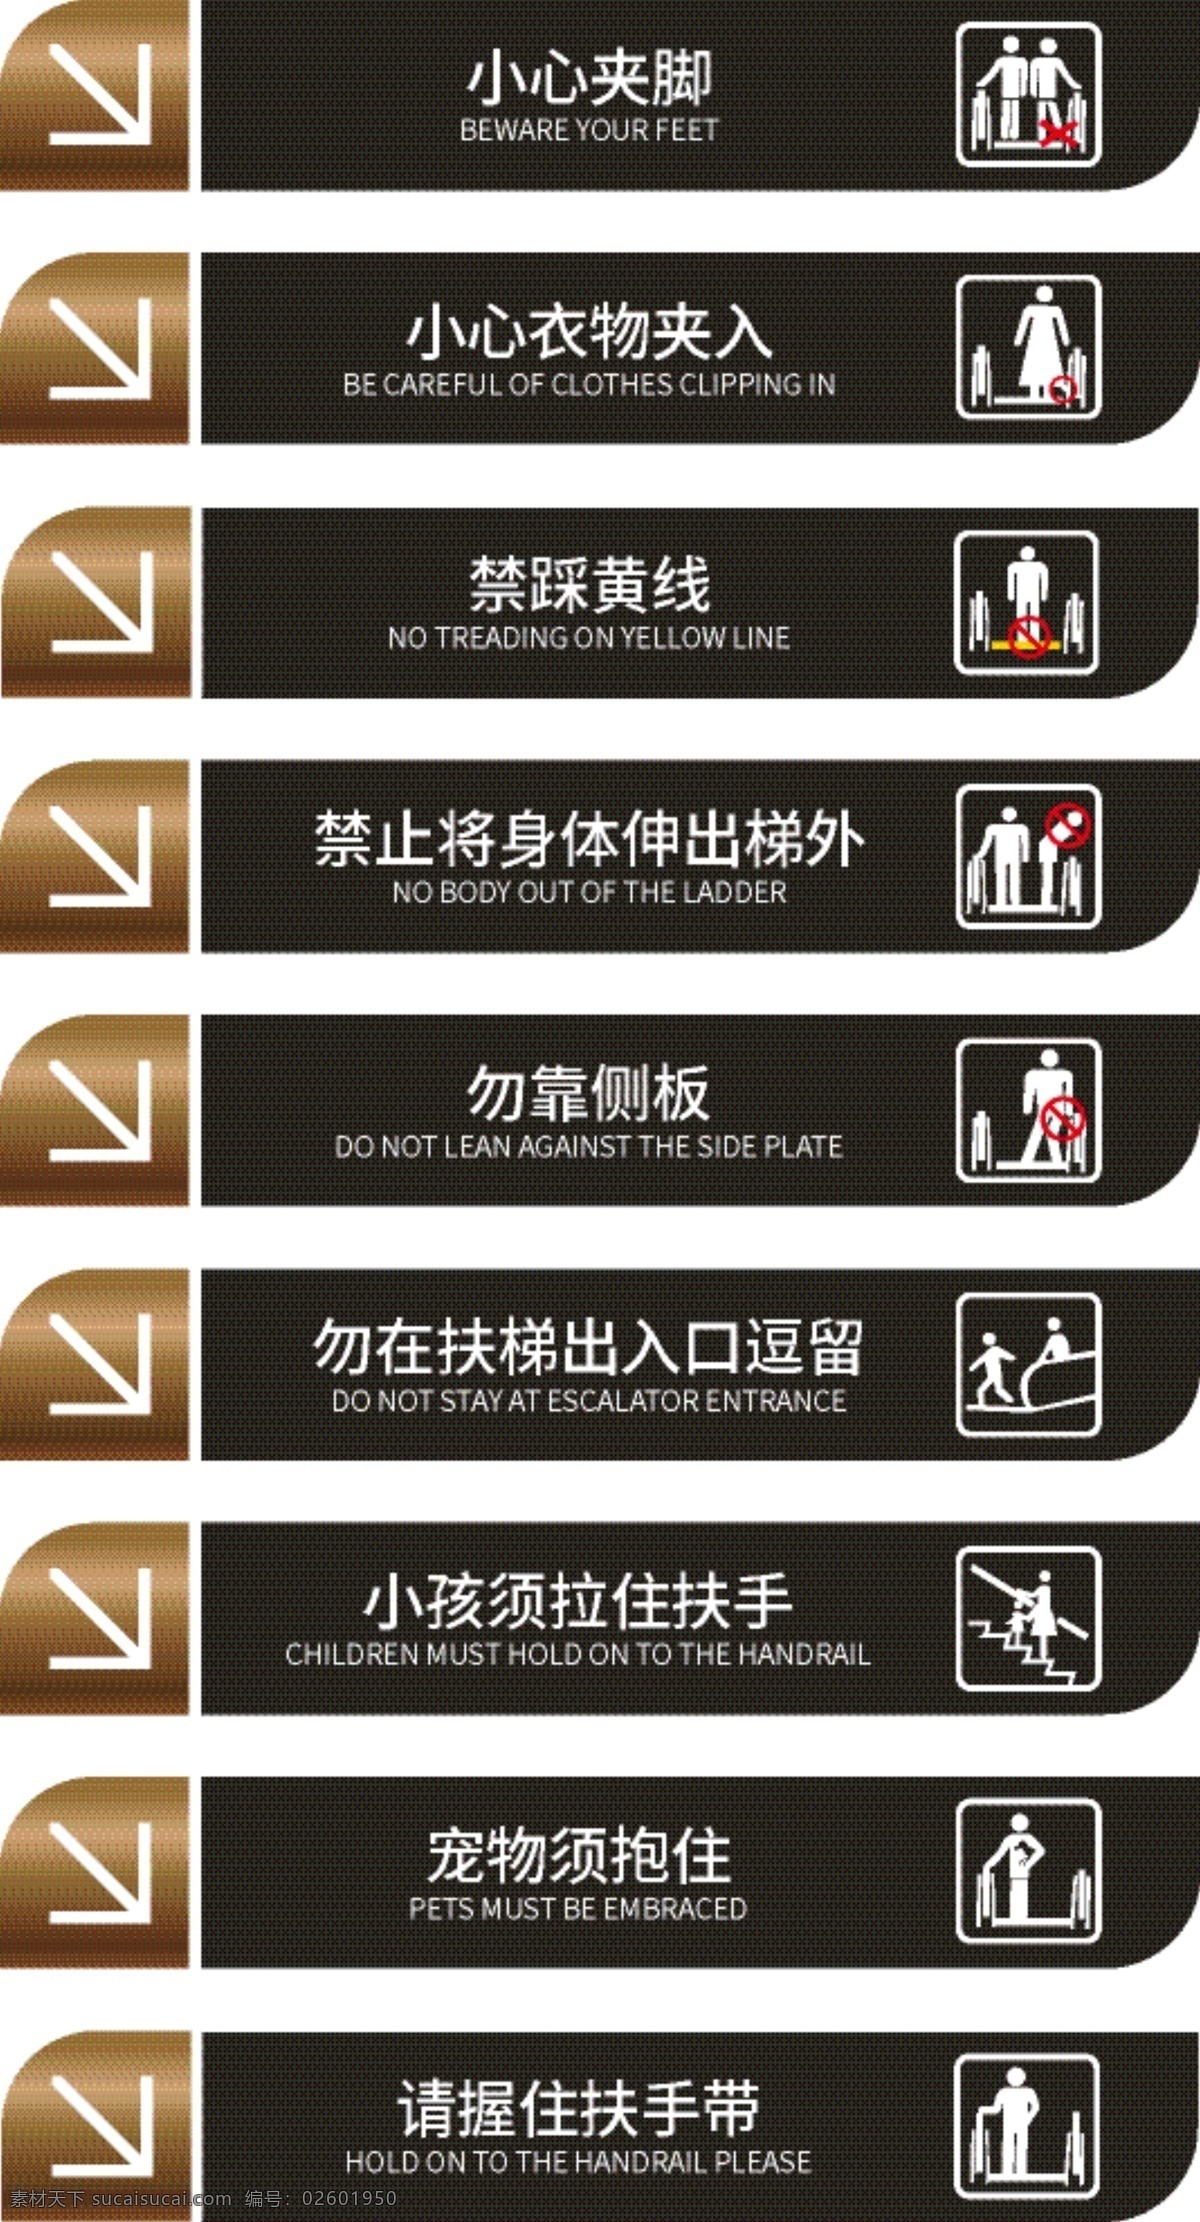 共 场所 电梯 扶梯 指示牌 导 视 vi 共场所 导视vi 标签 标志图标 网页小图标